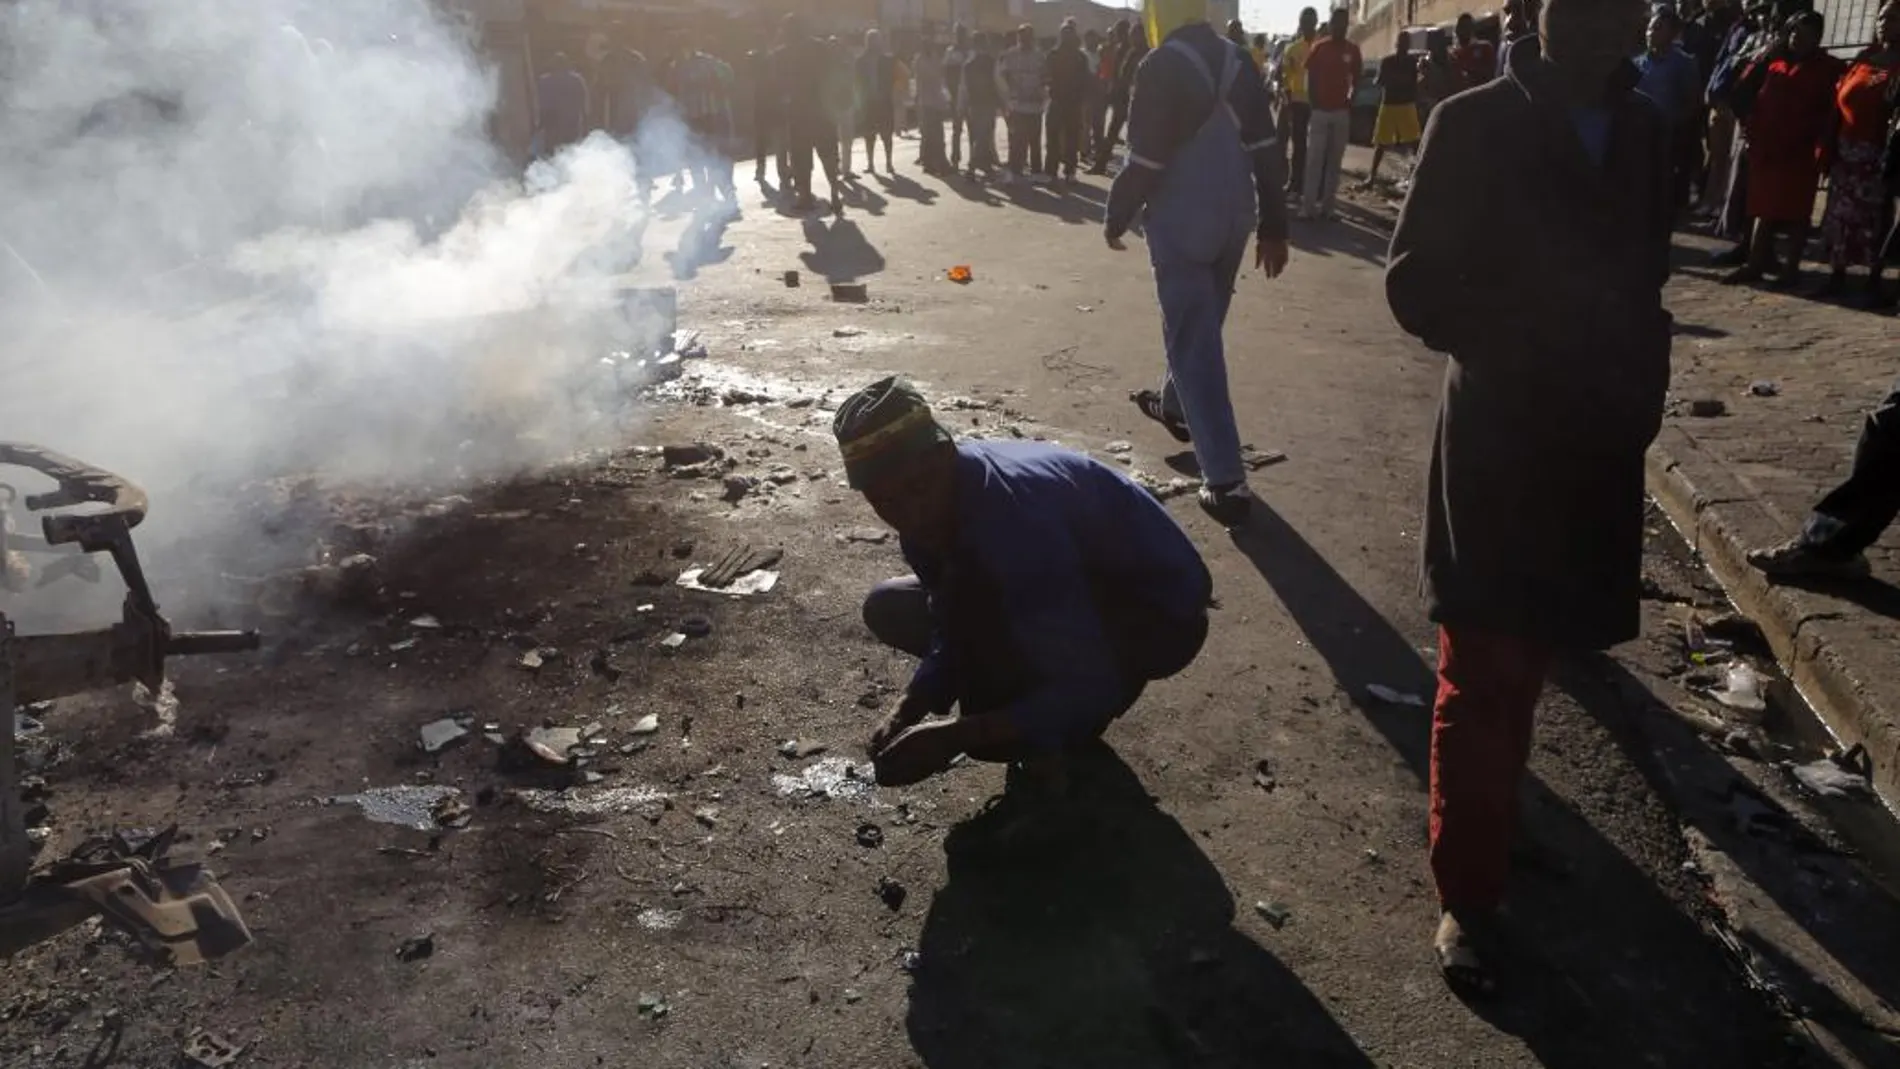 Vecinos partidarios de la expulsión de extranjeros observan un coche incendiado en un ataque xenófobo registrado en el centro de Johannesburgo